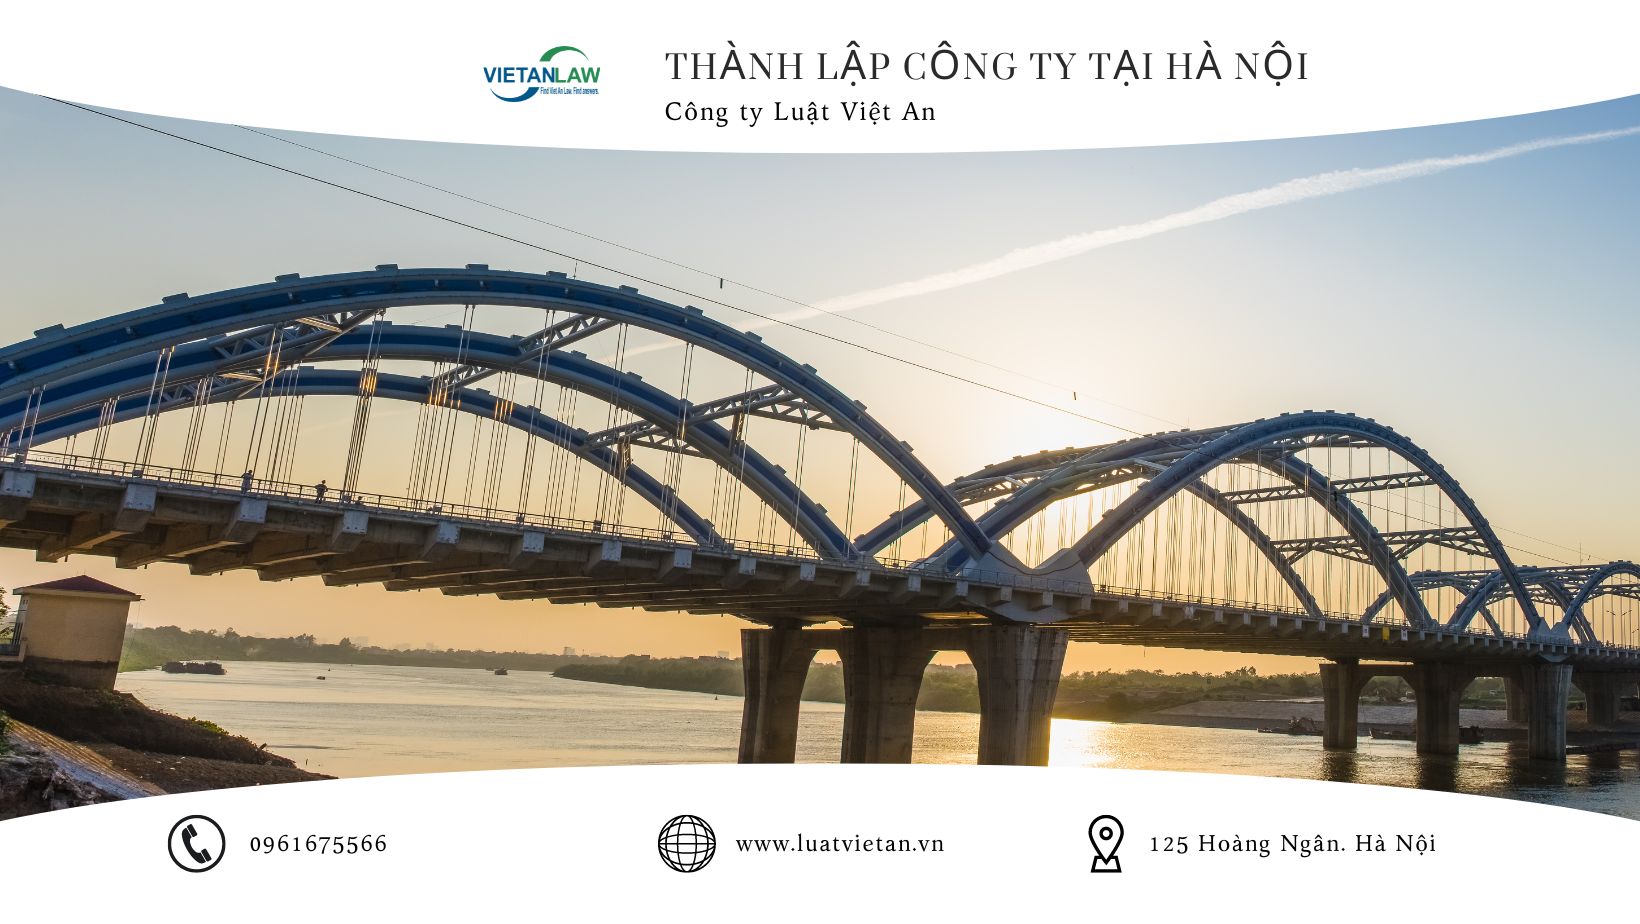 Thành lập công ty tại Hà Nội